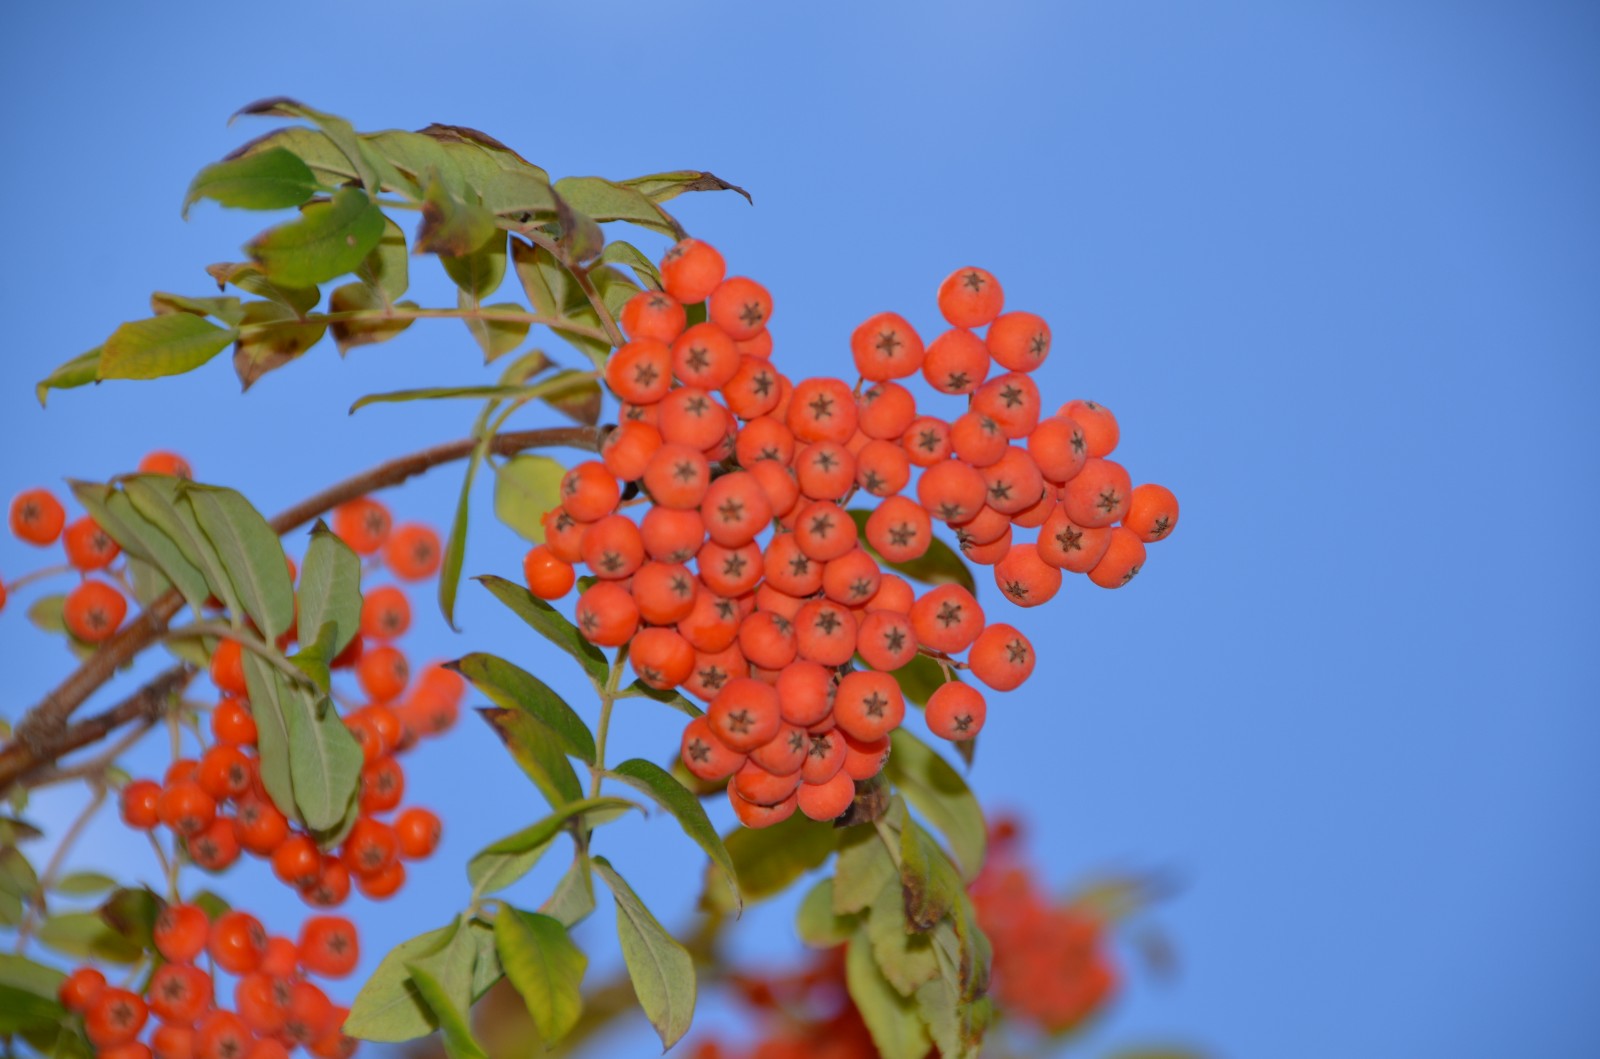 秋天花楸树的果子变红了,原创摄影秋天花楸树的果子